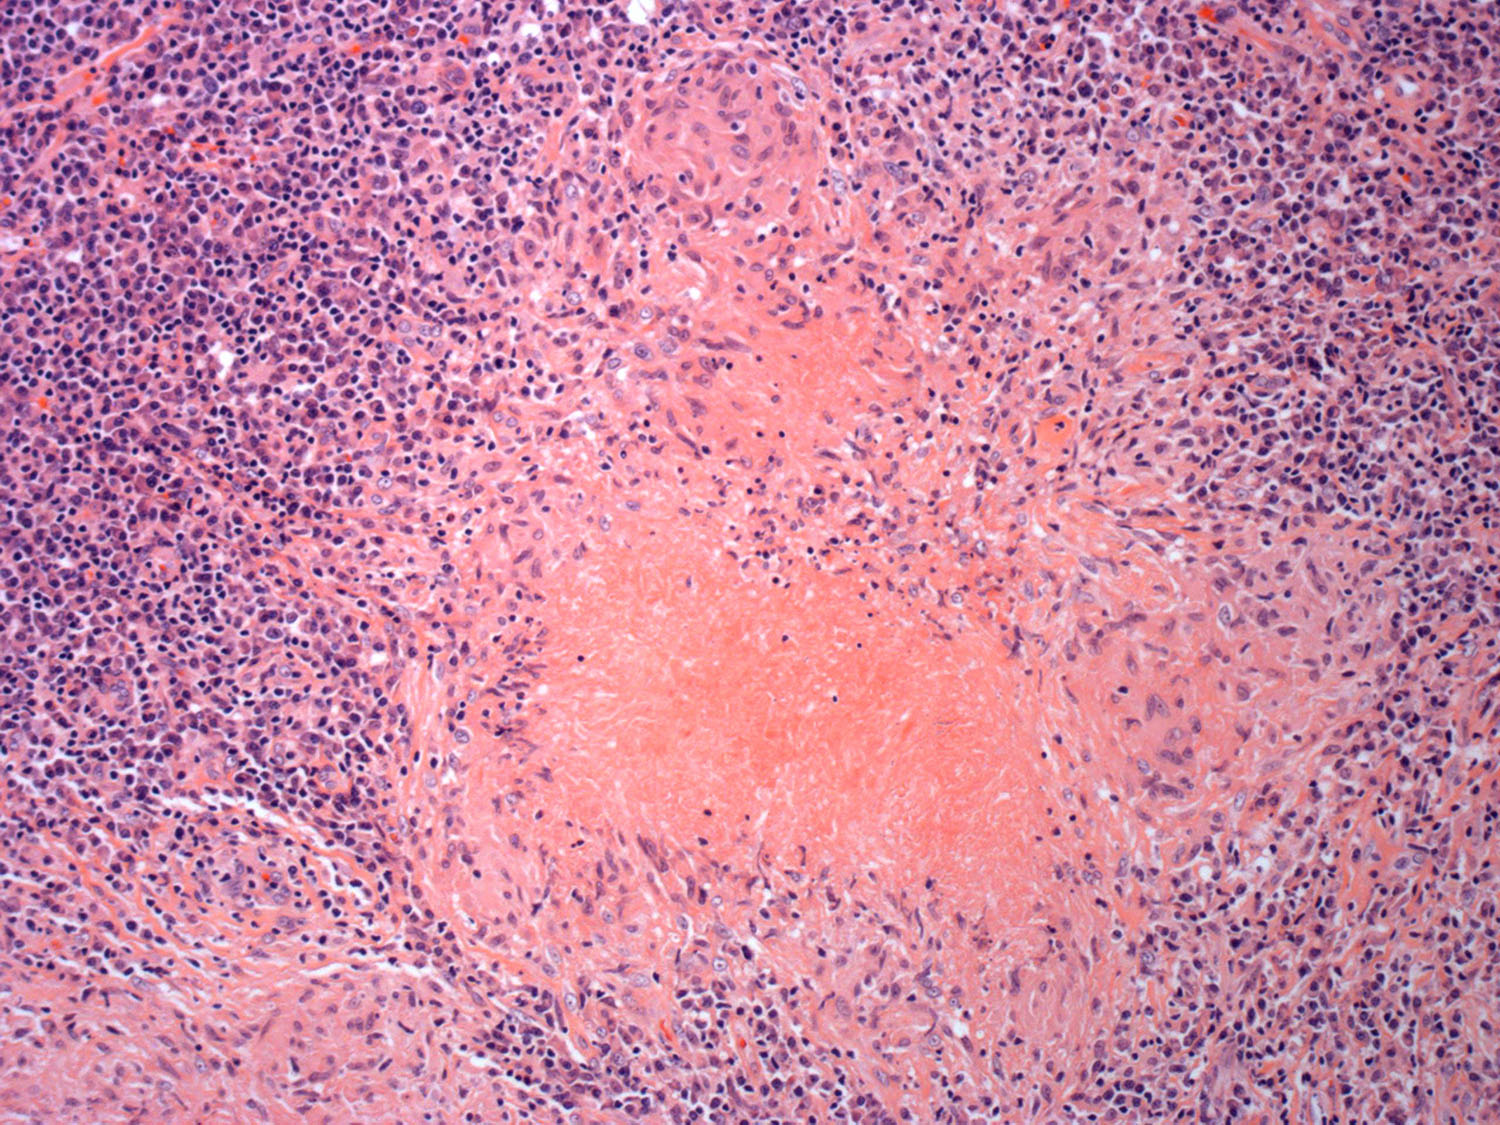 Necrosis in tuberculosis